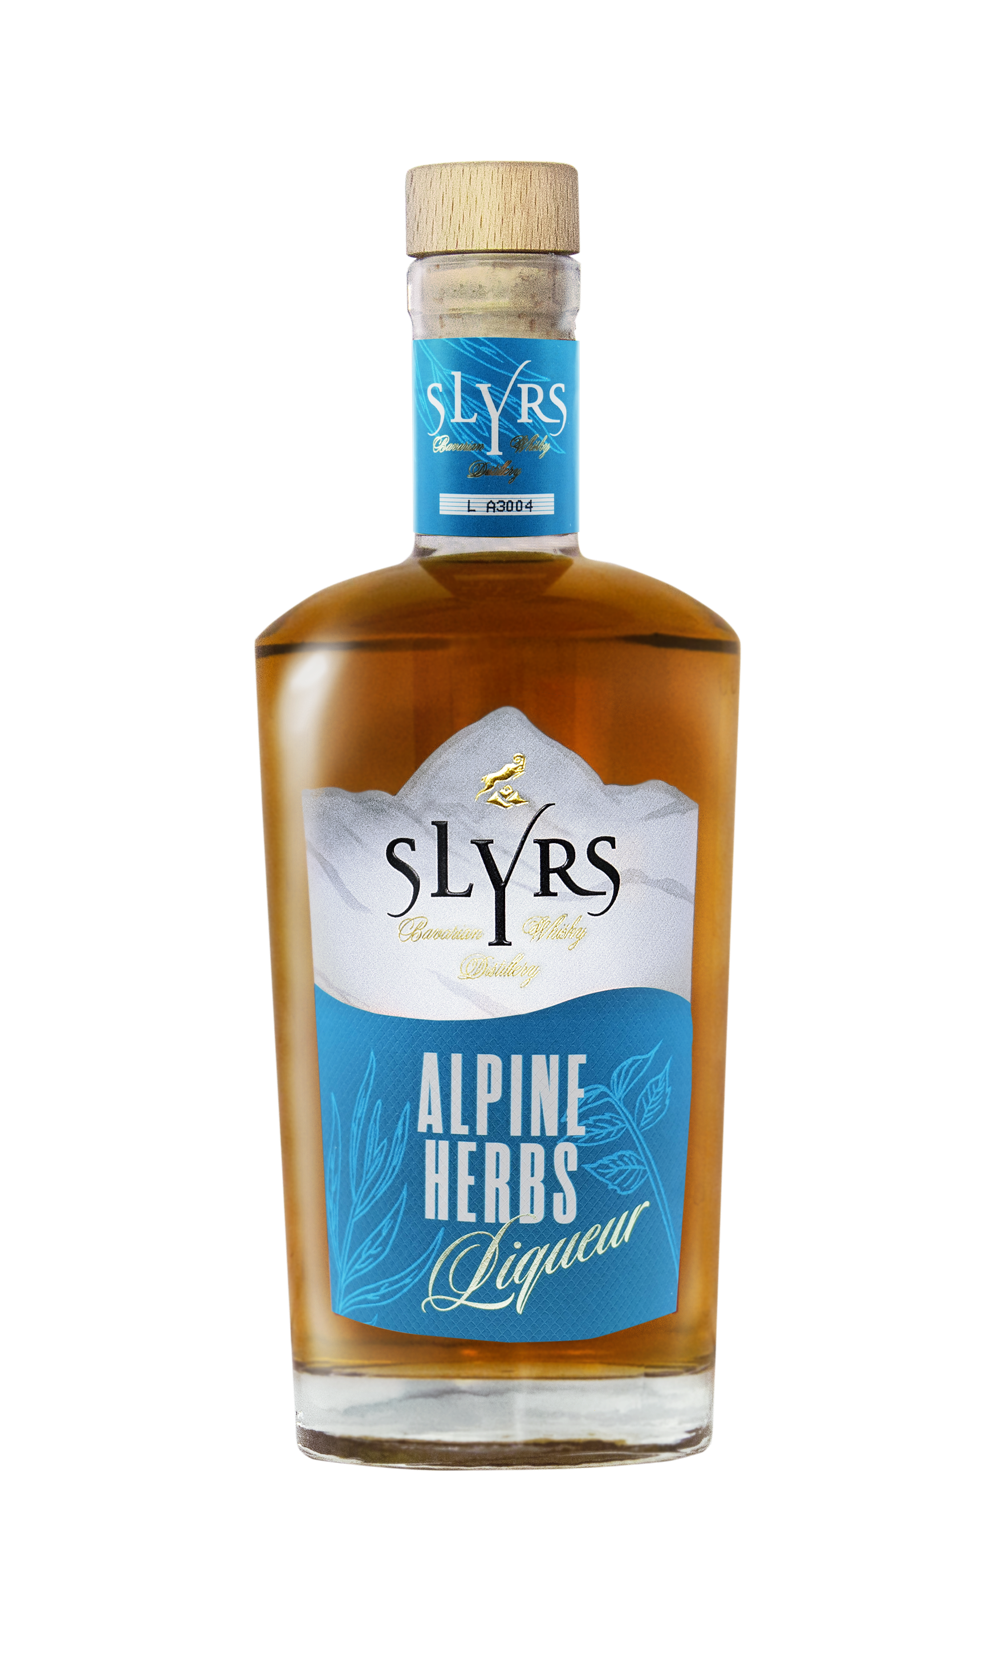 SLYRS Alpine Herbs Liqueur 30% vol. 30.0% 0.5L, Spirits